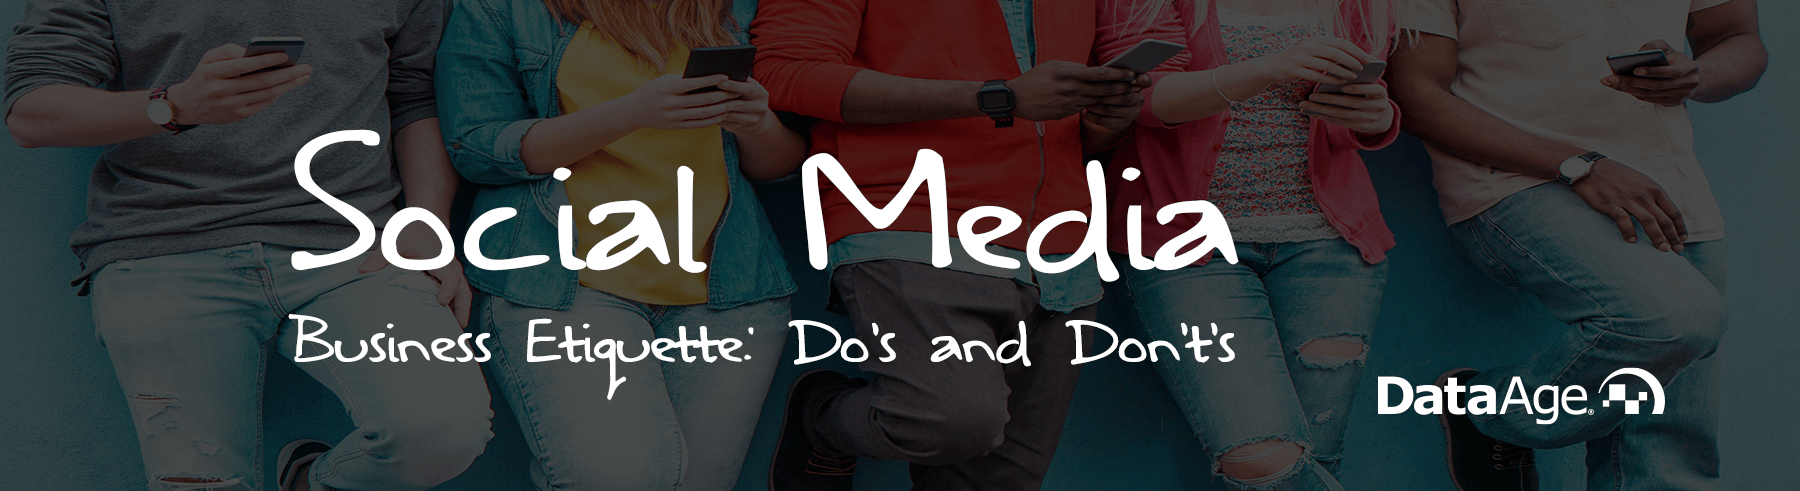 header-Social Media Business Etiquette